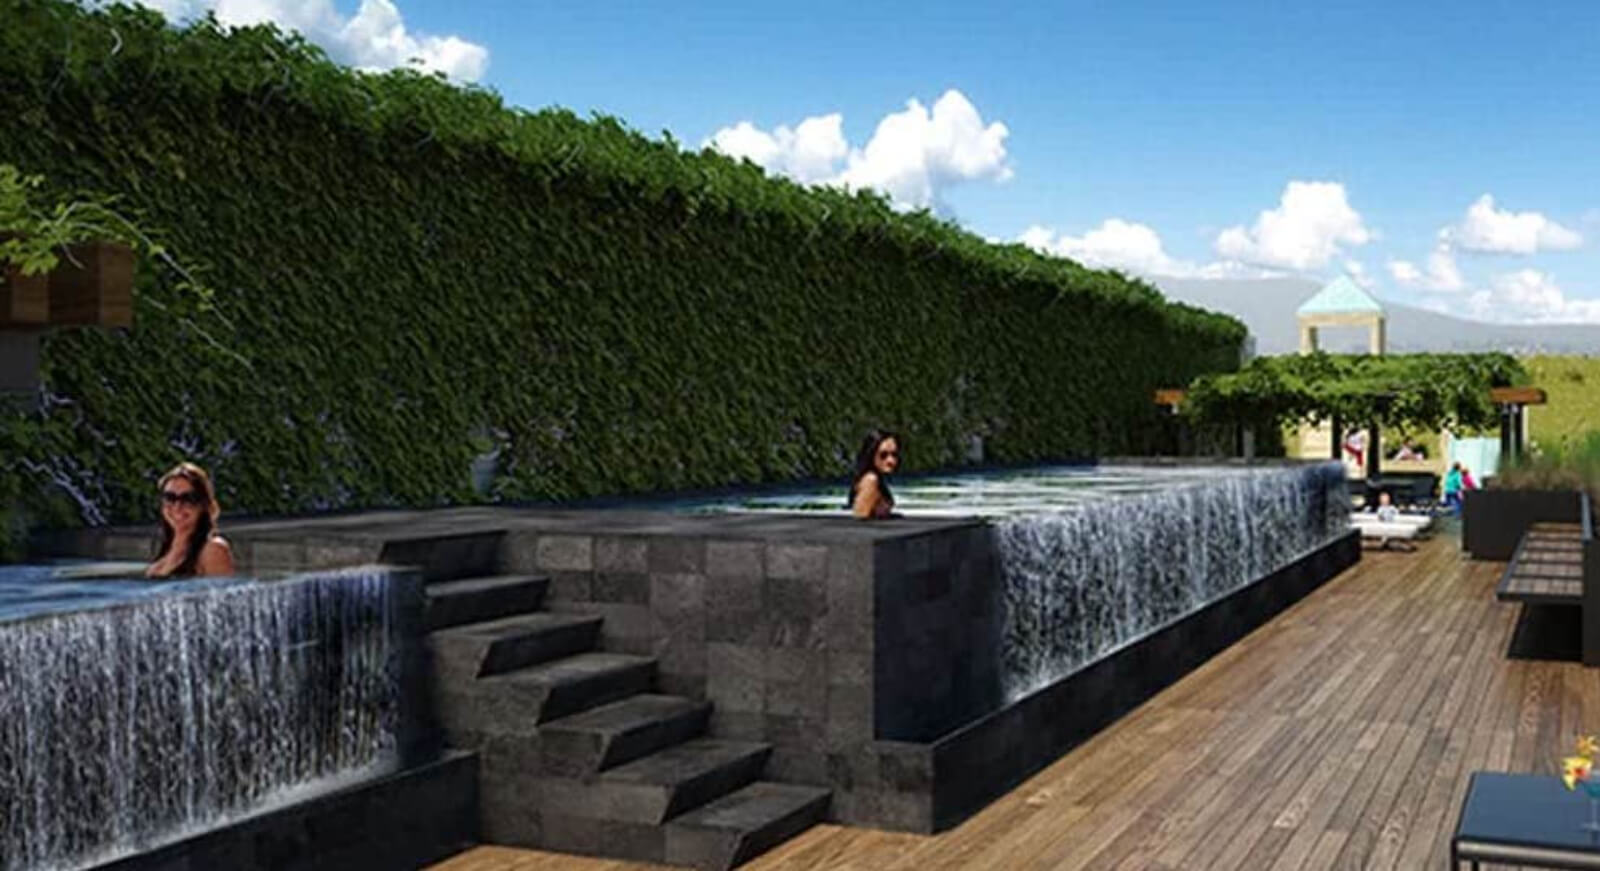 Condominio con terraza de 24 m2 vista al bosque de Chapultepec, cuarto de servicio con baño, altura de 3.10 metros, helipuerto, bar y restau